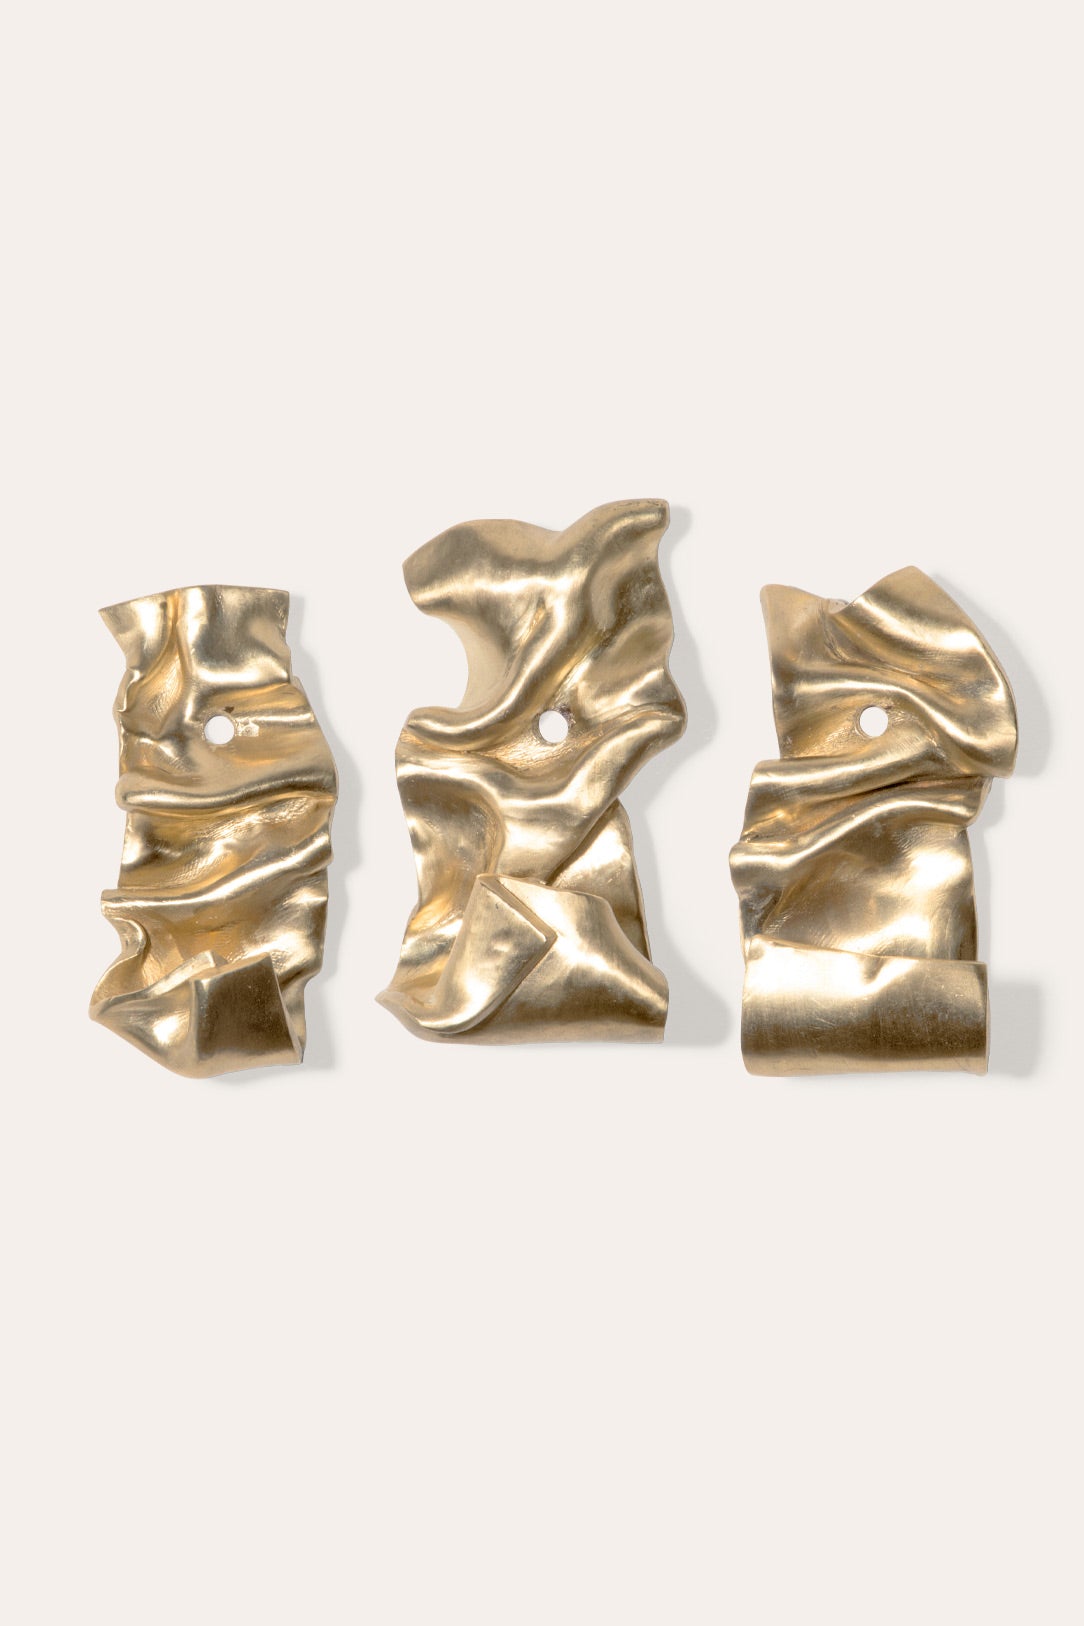 Completedworks - L08 Brass Wall Hooks - Set of 3 - Brushed Gold